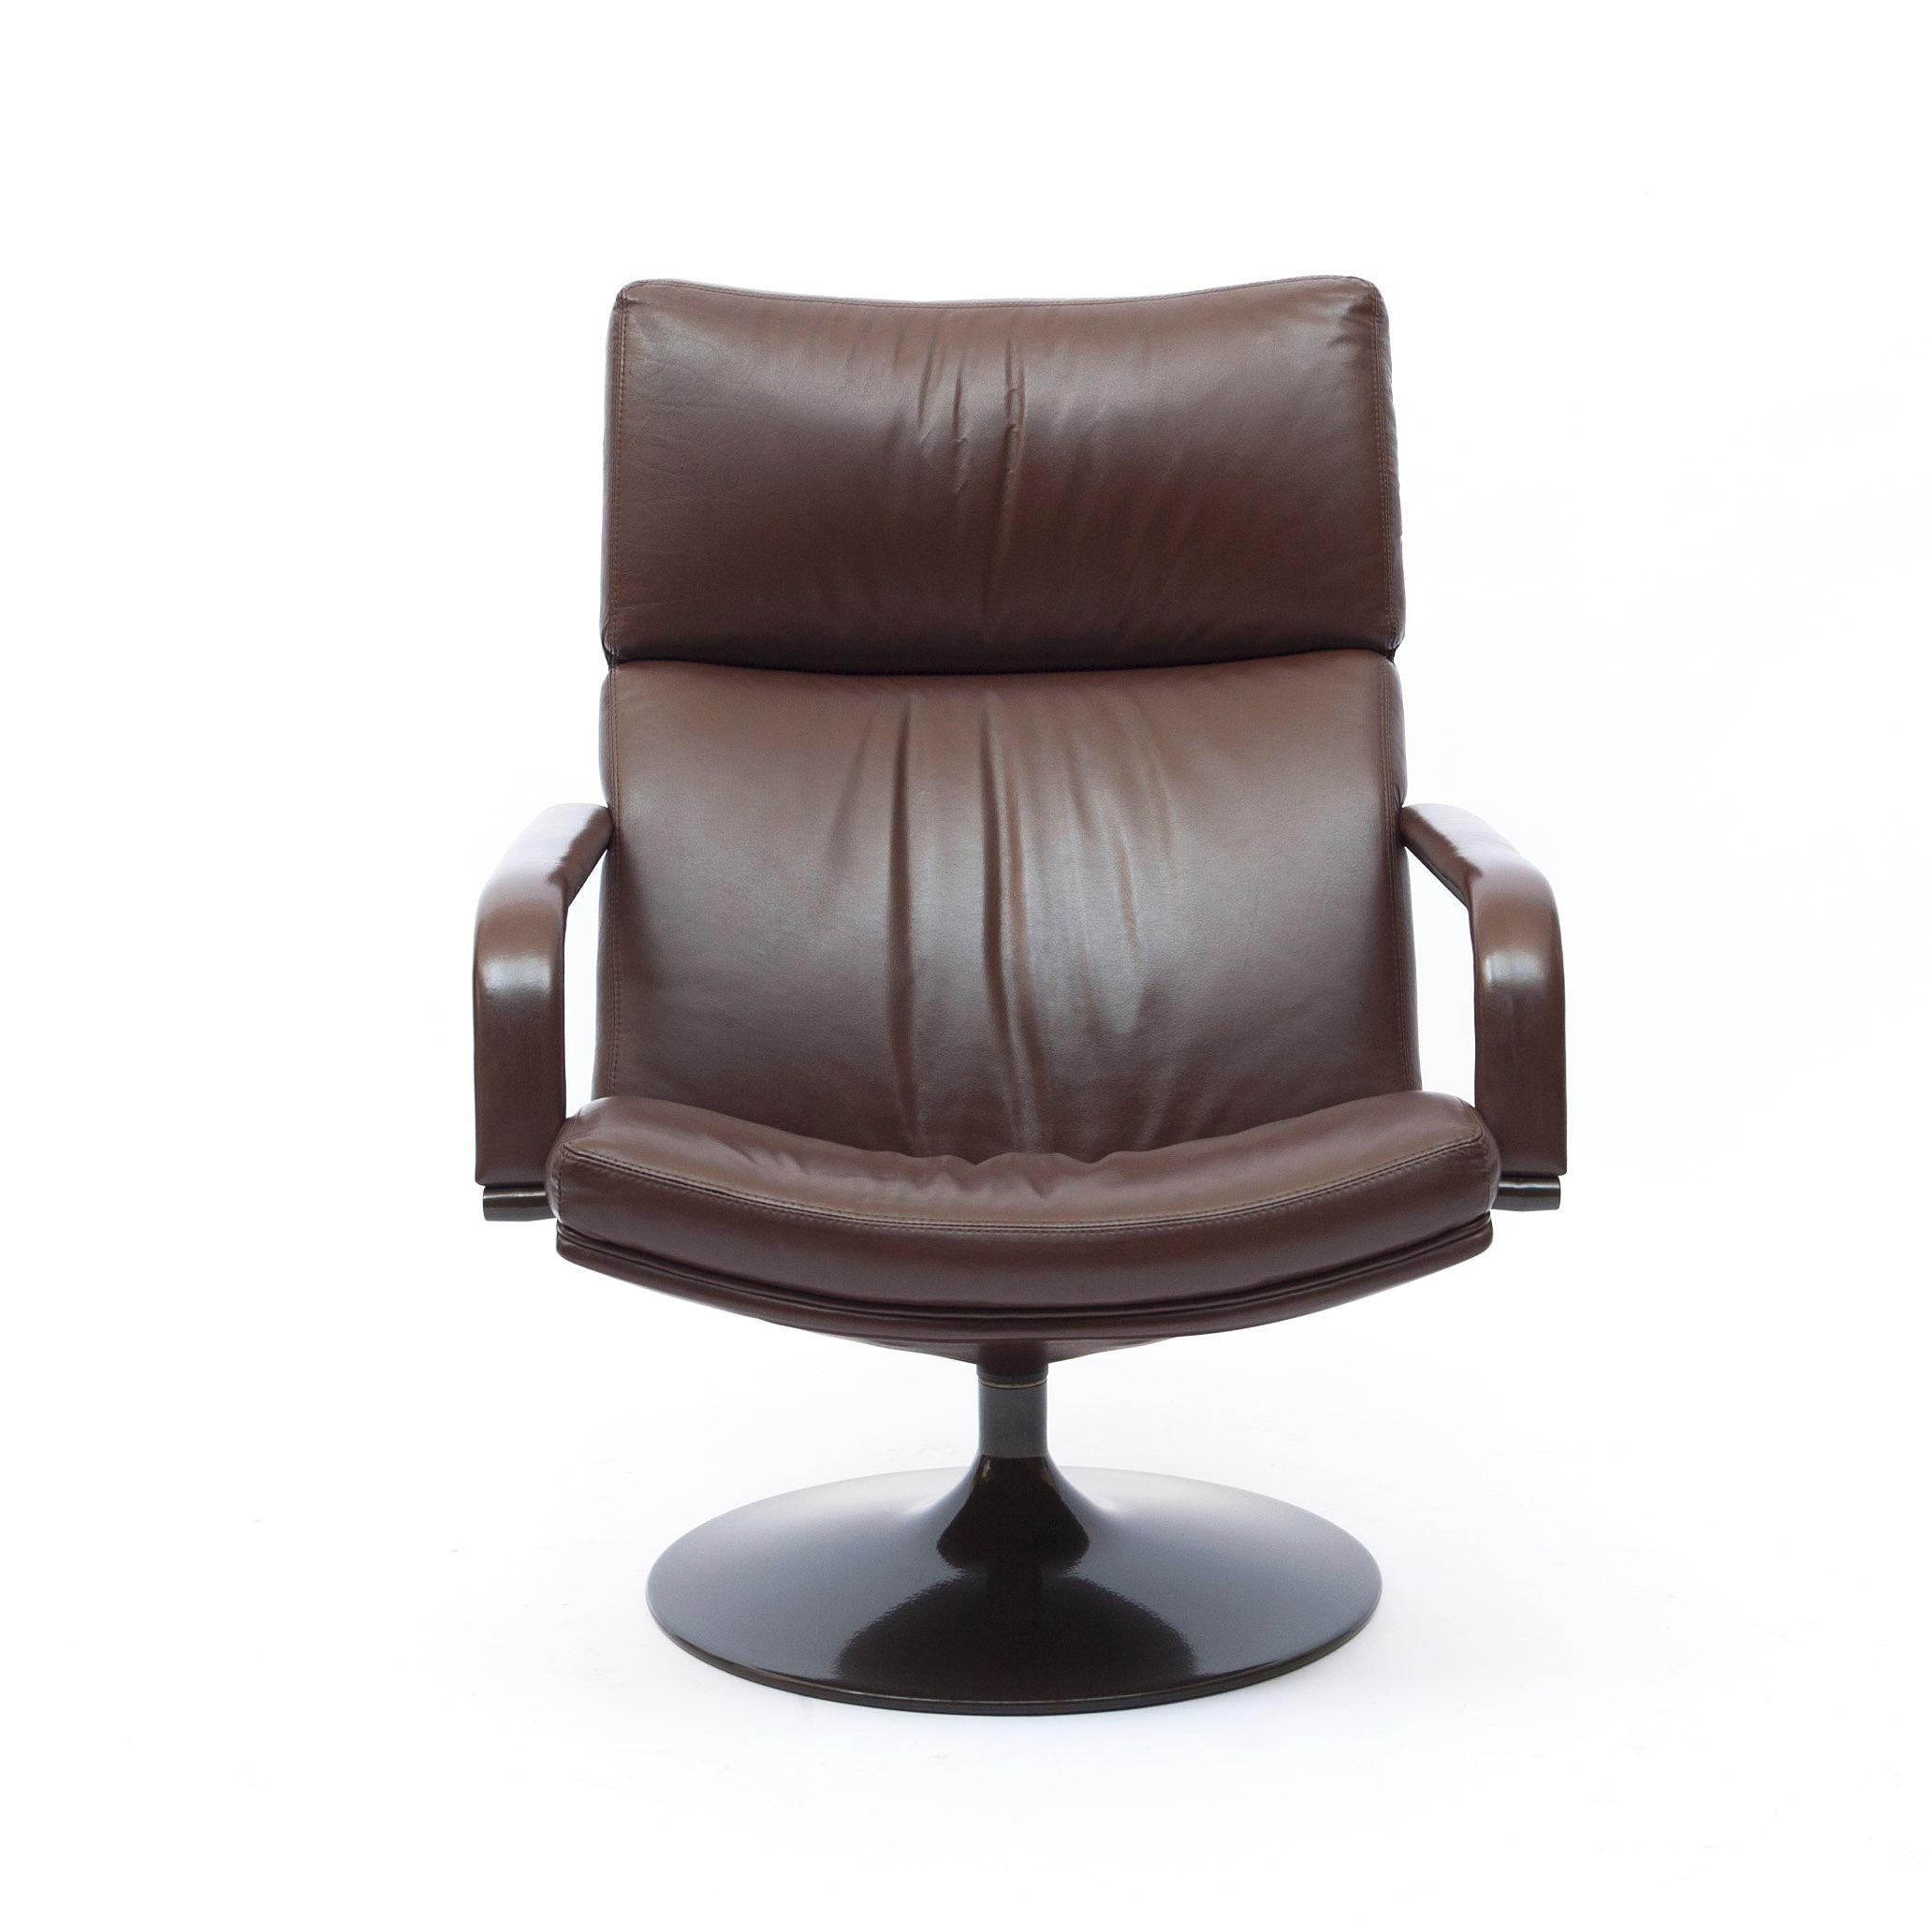 Brauner Ledersessel mit Metallgestell von Geoffrey Harcourt. Das elegante Leder bedeckt sowohl die Armlehnen als auch die Unterseite und die Rückseite des Stuhls. Guter Originalzustand. Ein luxuriöser Sessel zum Träumen, Entspannen oder für ein